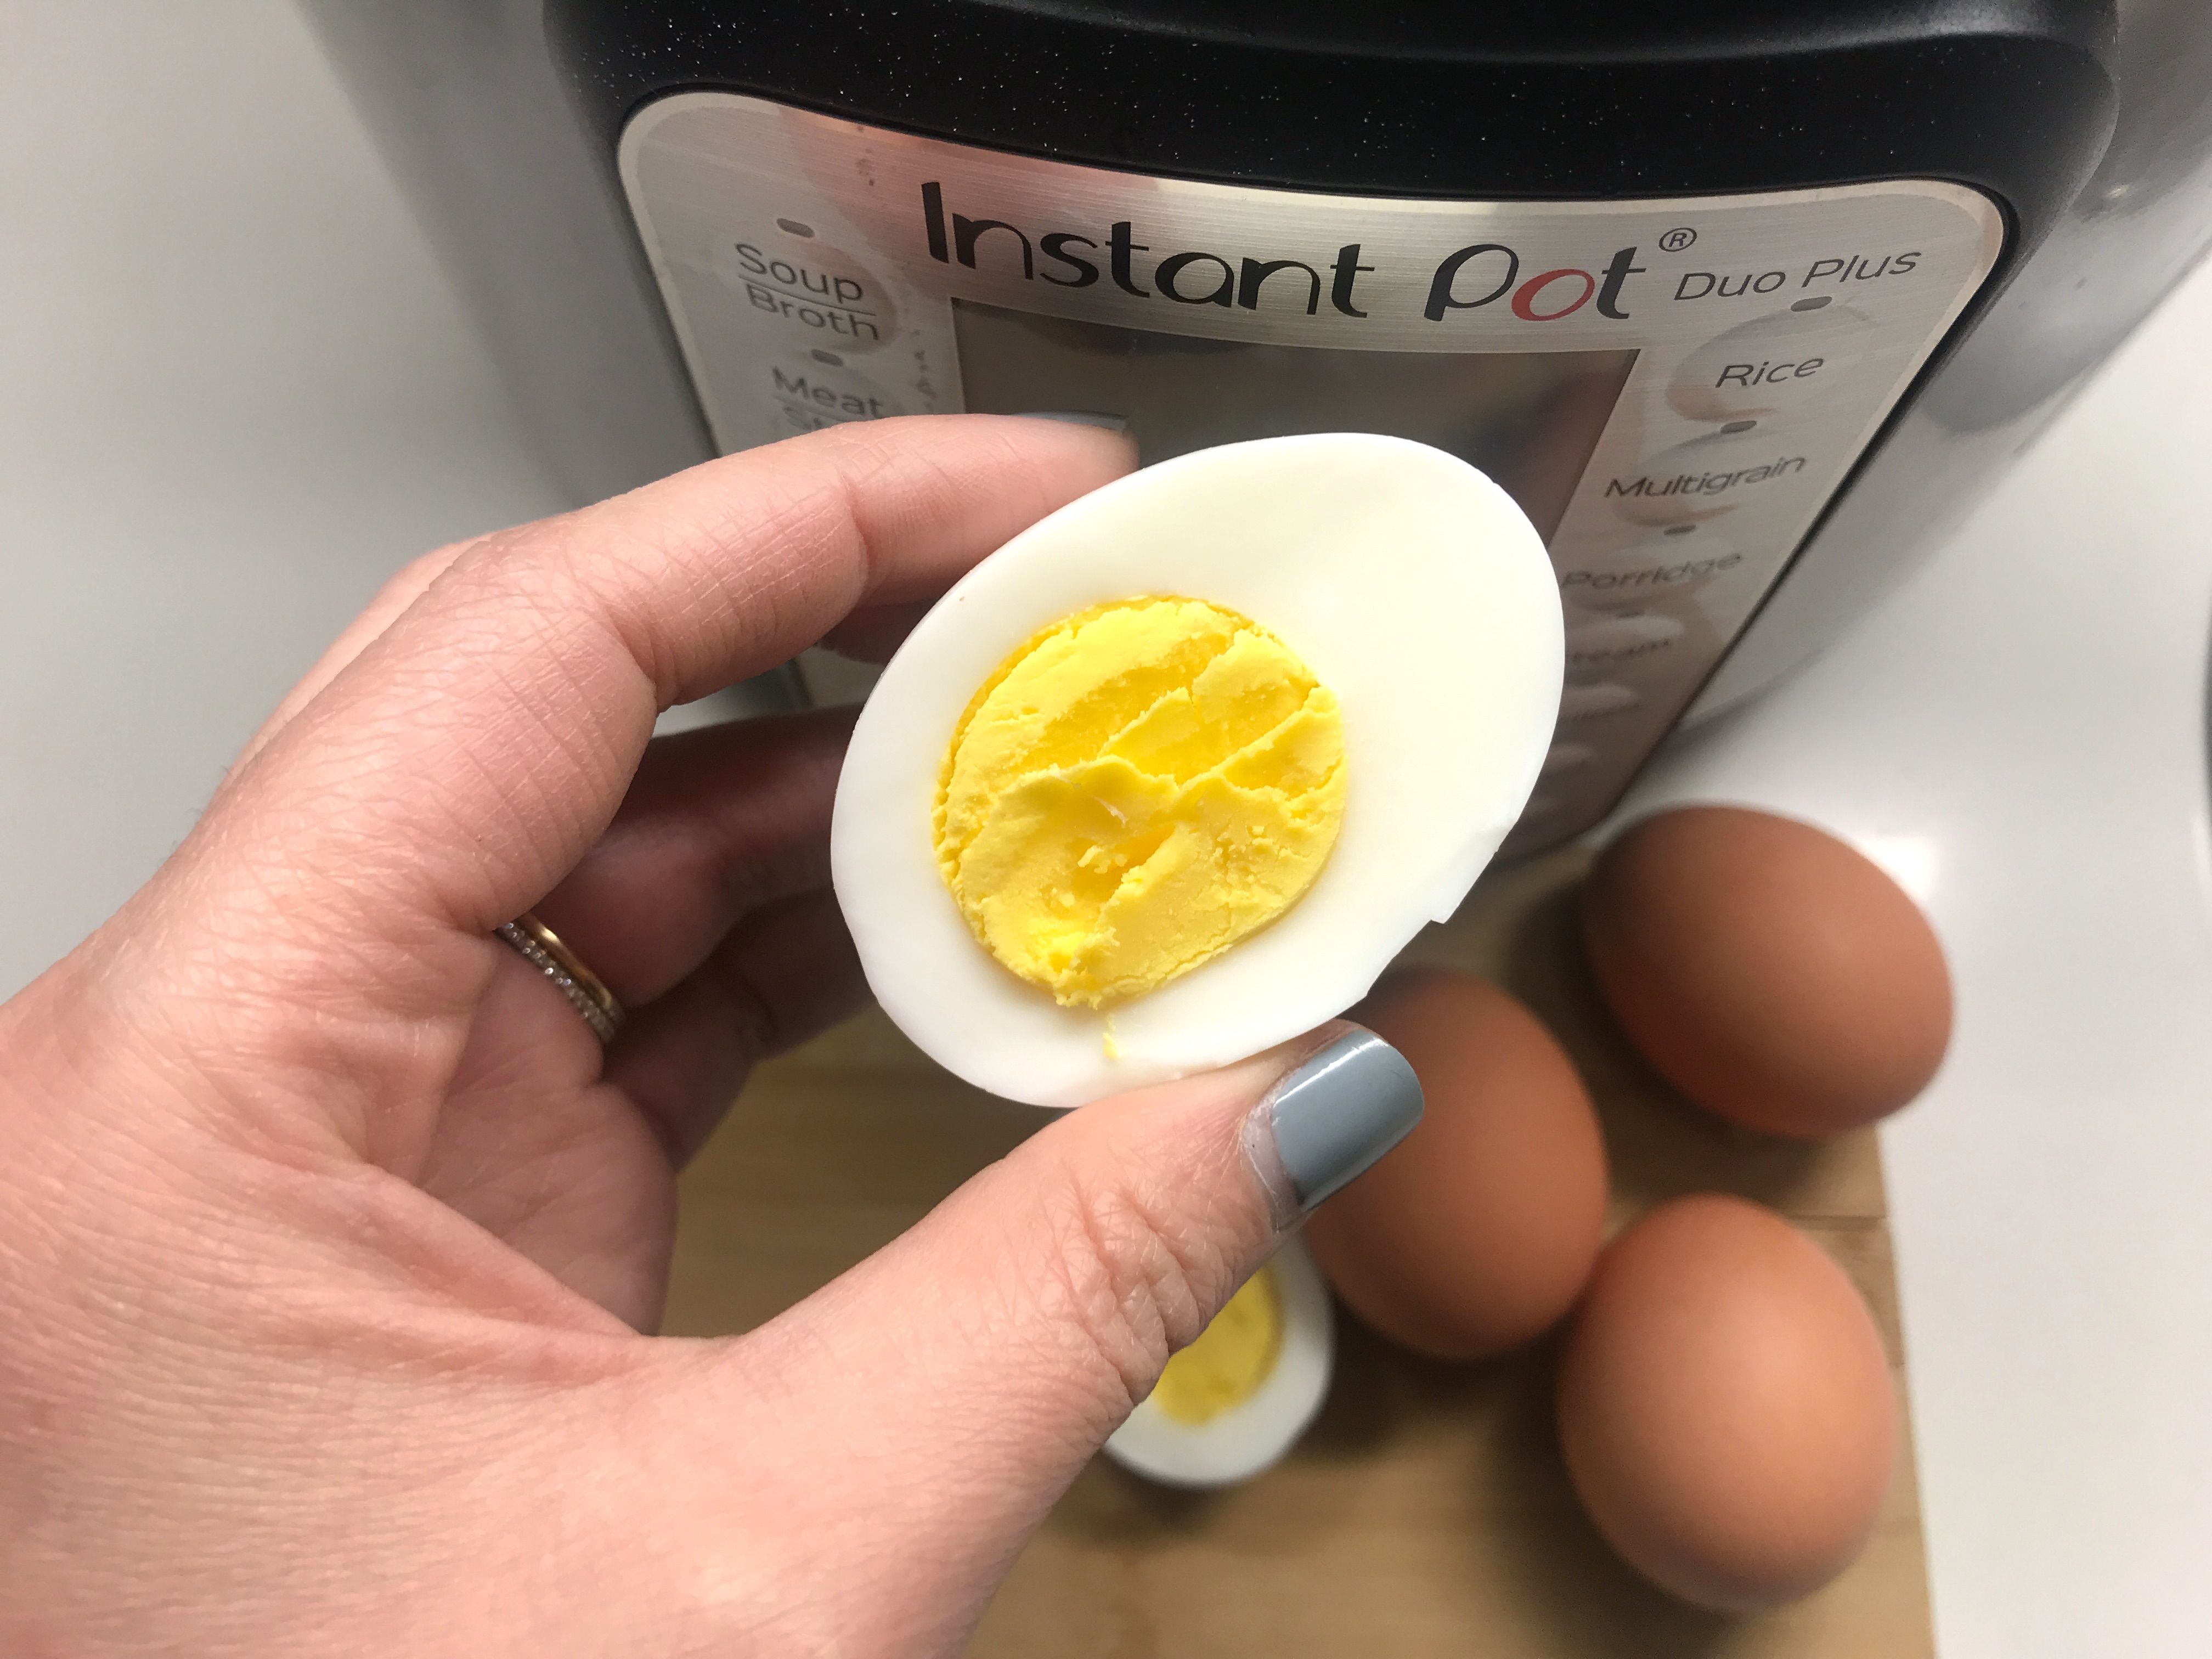 Instant Pot Hard Boiled Eggs Recipe - Pressure Cooker Hard Boiled Eggs